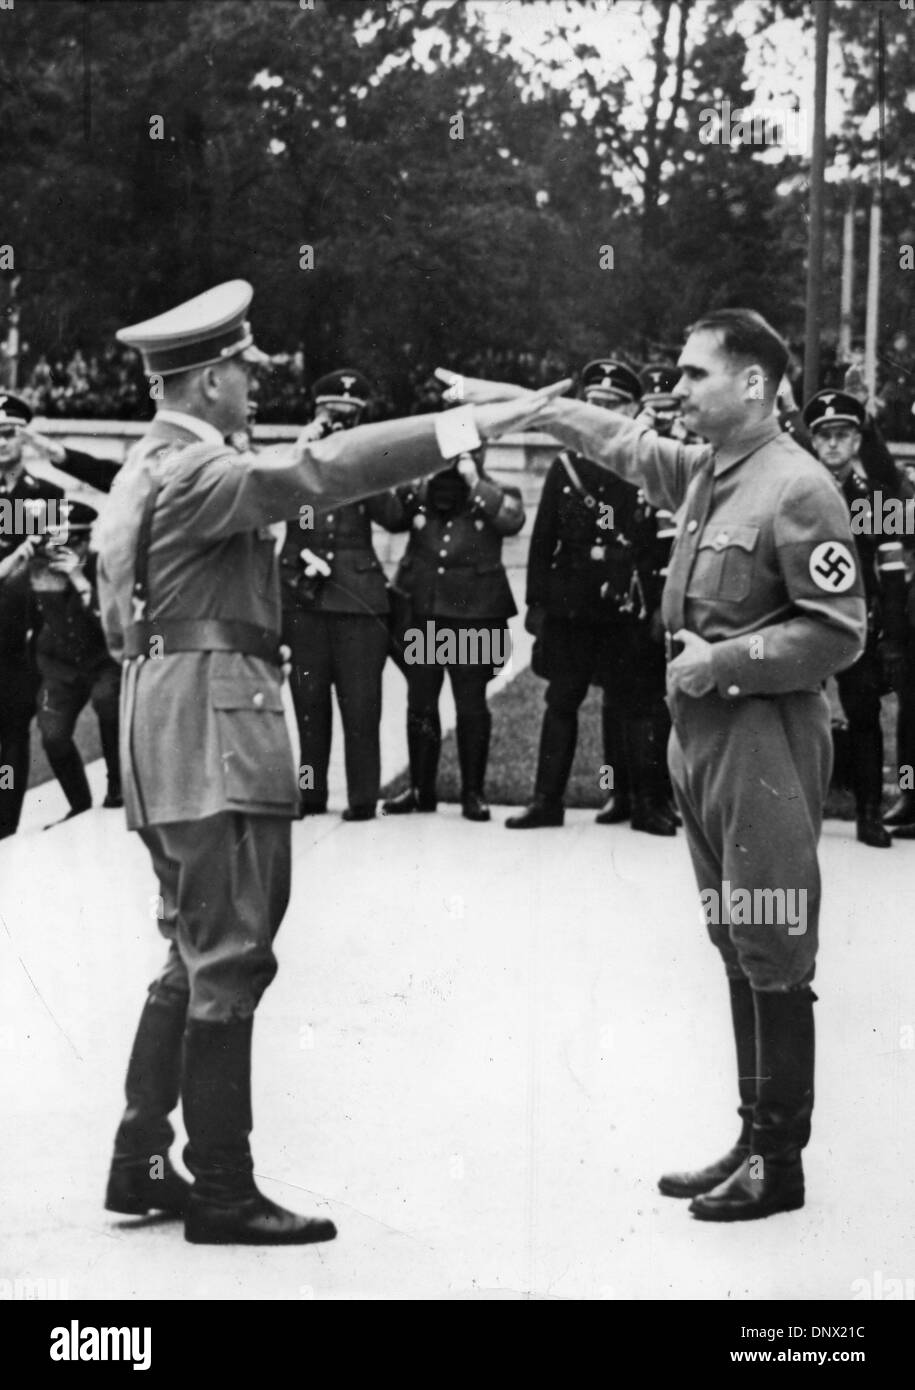 Le 9 juillet, 1938 - Nuremberg, Allemagne - HERR Rudolf Hess (R), l'adjoint d'Adolf Hitler, accueille le Führer Adolf Hitler avec le salut nazi lorsque celui-ci est arrivé à la salle des congrès de Nuremberg pour l'ouverture de la 10e rallye Parti Socialiste des Nations Unies. Hess a ouvert le rallye. (Crédit Image : © Keystone Photos USA/ZUMAPRESS.com) Banque D'Images